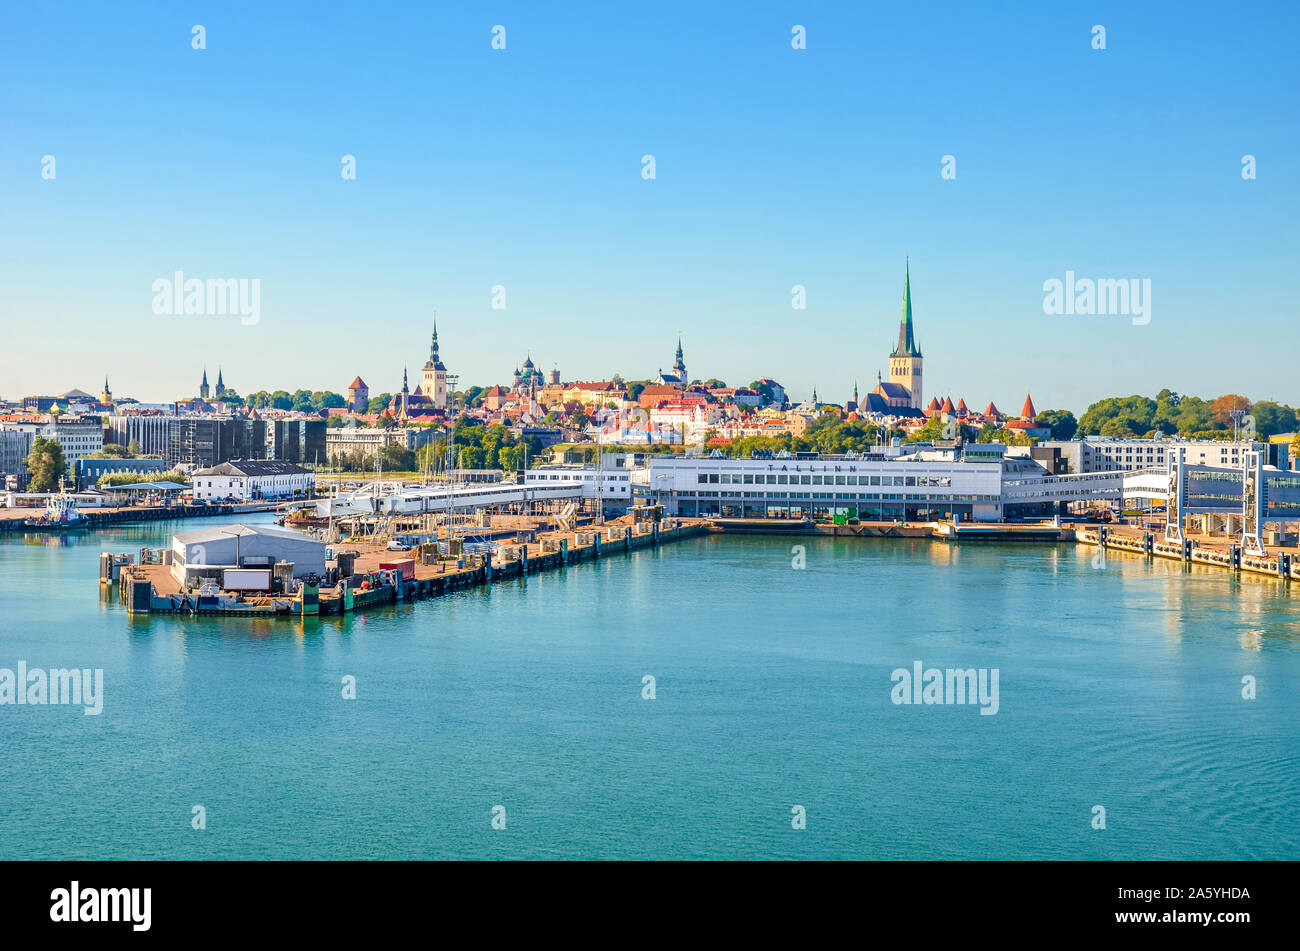 Schöne Stadtbild von Tallinn, Estland fotografiert von der Kreuzfahrt mit Hafen durch den Golf von Finnland. Estnische Hauptstadt, Baltische Staaten. Cruise Terminal, das historische Zentrum. Stockfoto